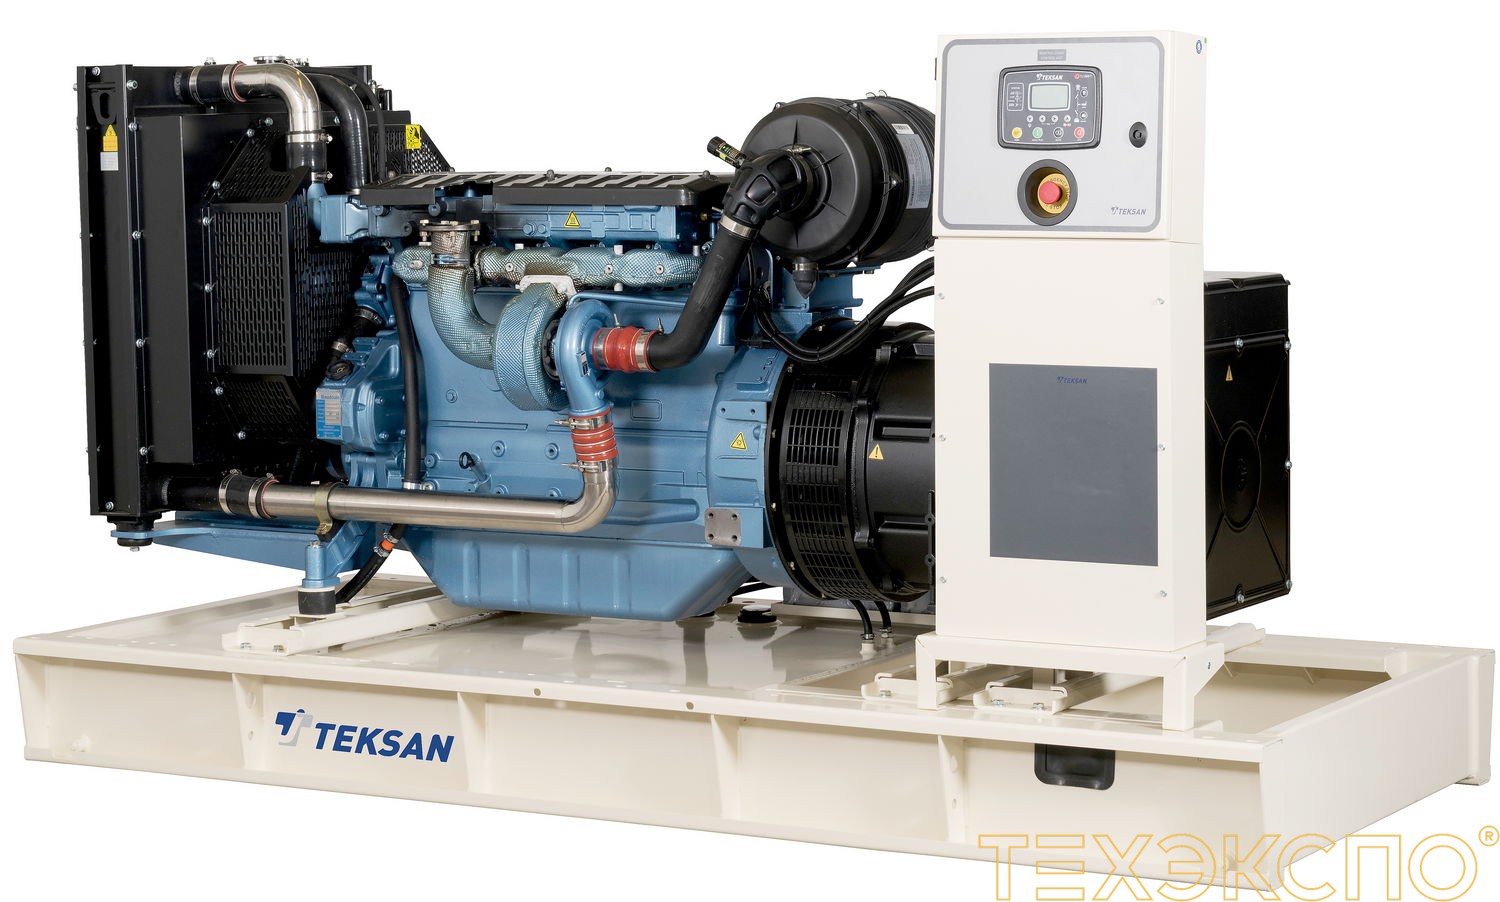 Teksan TJ60BD - ДЭС 42 кВт в Санкт-Петербурге за 1 042 636 рублей | Дизельная электростанция в Техэкспо